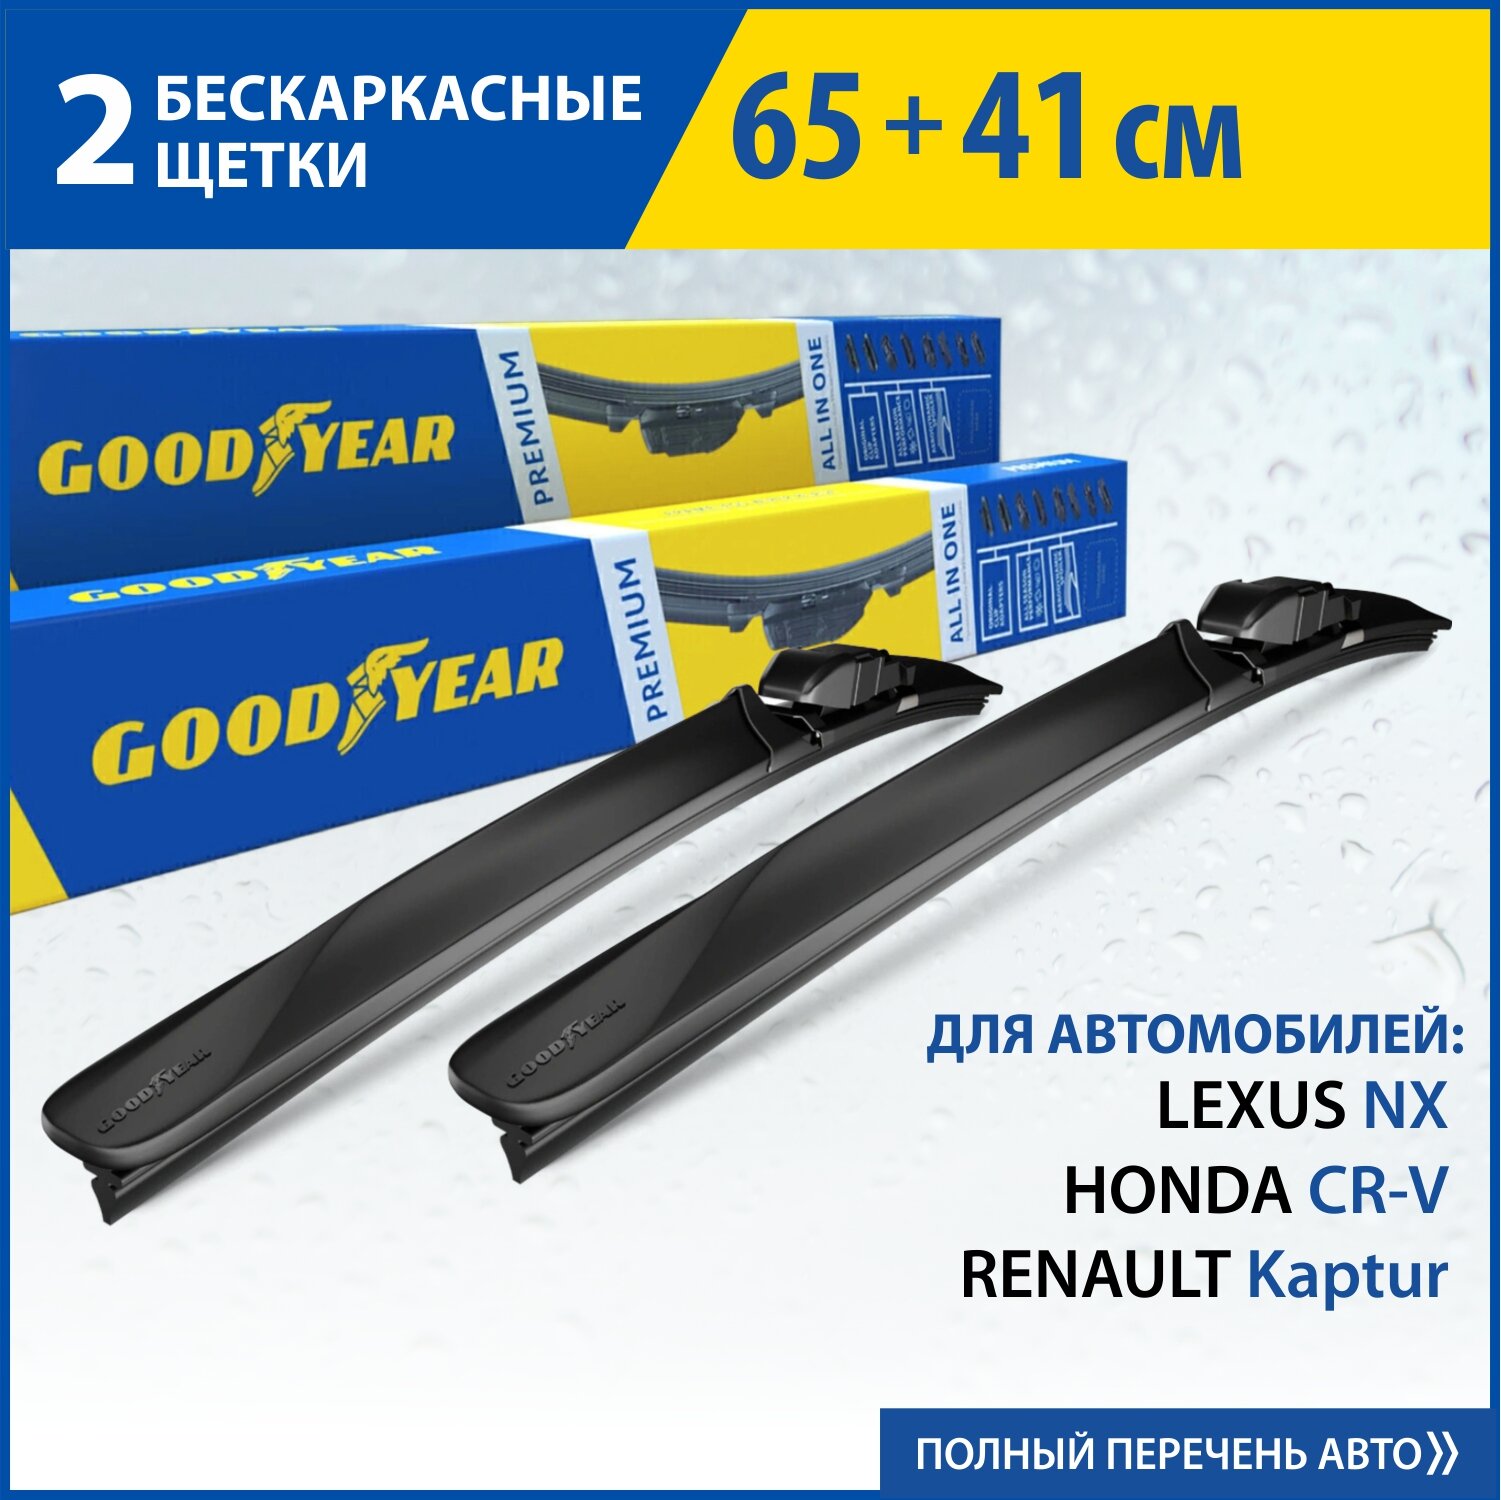 2 Щетки стеклоочистителя в комплекте (65+41 см), Дворники для автомобиля GOODYEAR для RENAULT Kaptur(16-нв), HONDA CR-V(7-нв), LEXUS NX(14-нв)